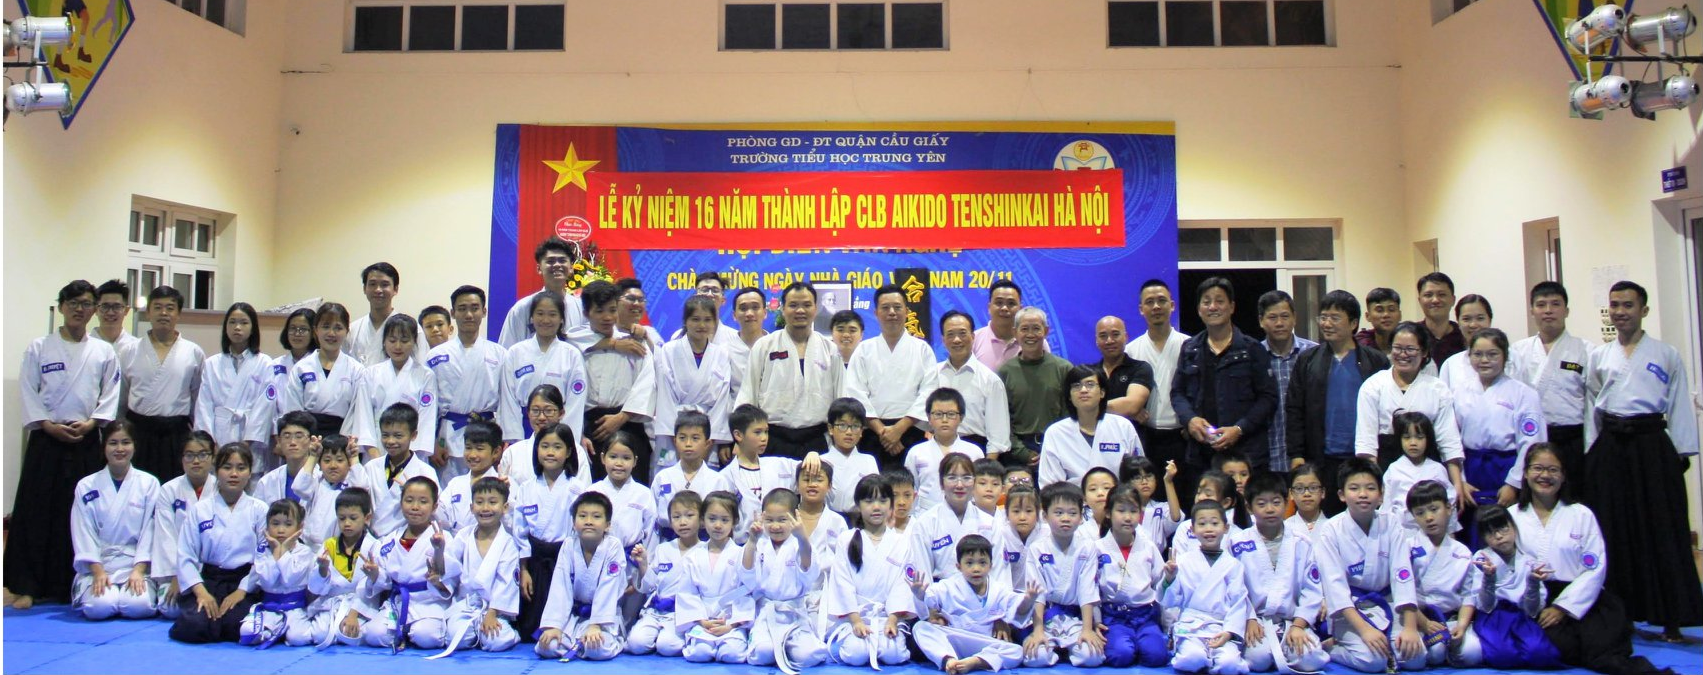 Câu lạc bộ Aikido Hà Nội đã có hơn 16 năm thành lập